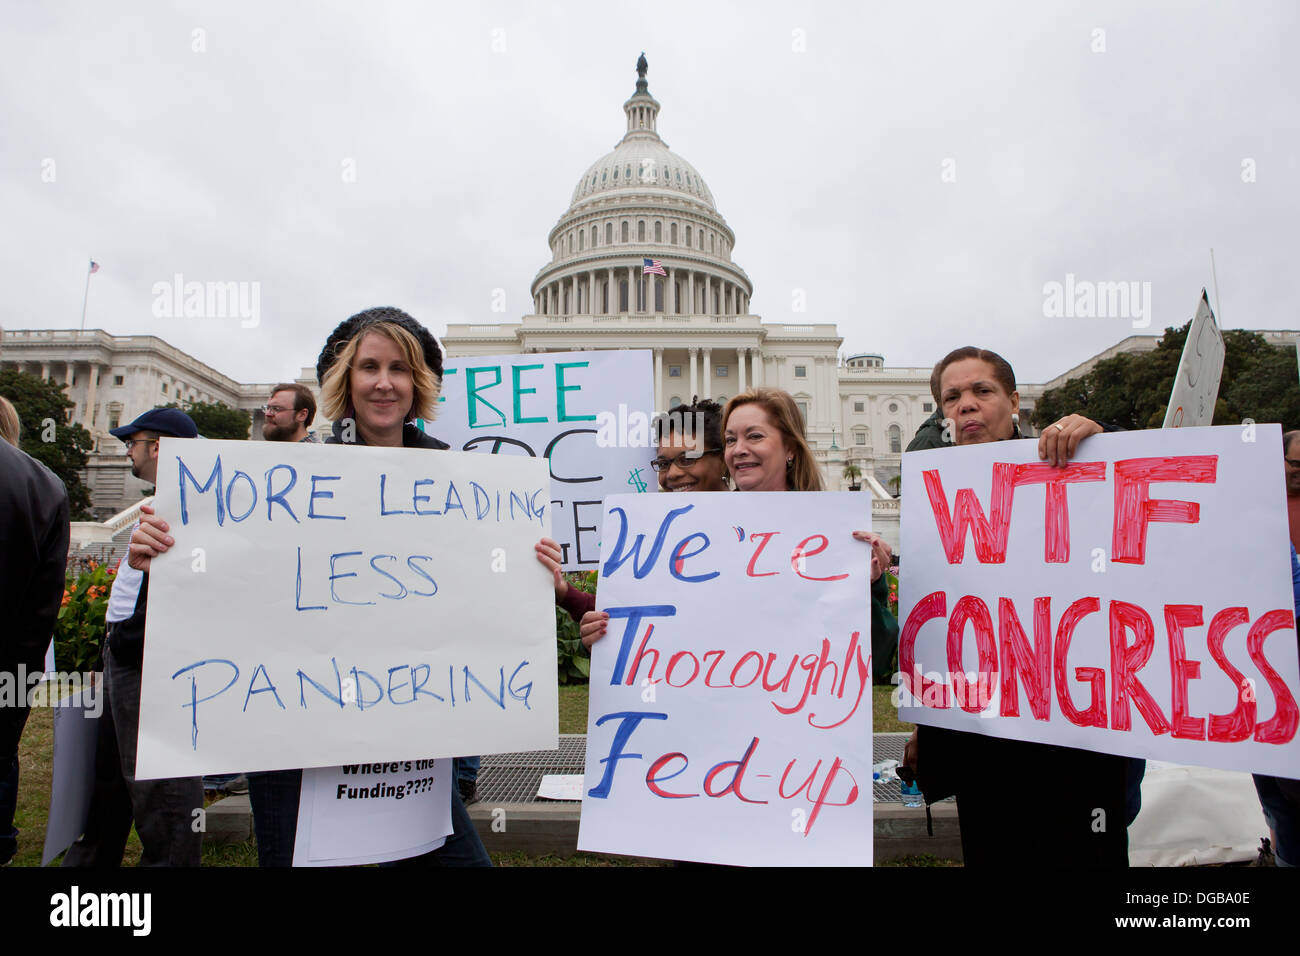 Les employés du gouvernement fédéral mis en congé pour protester devant le Capitole - Washington, DC USA Banque D'Images